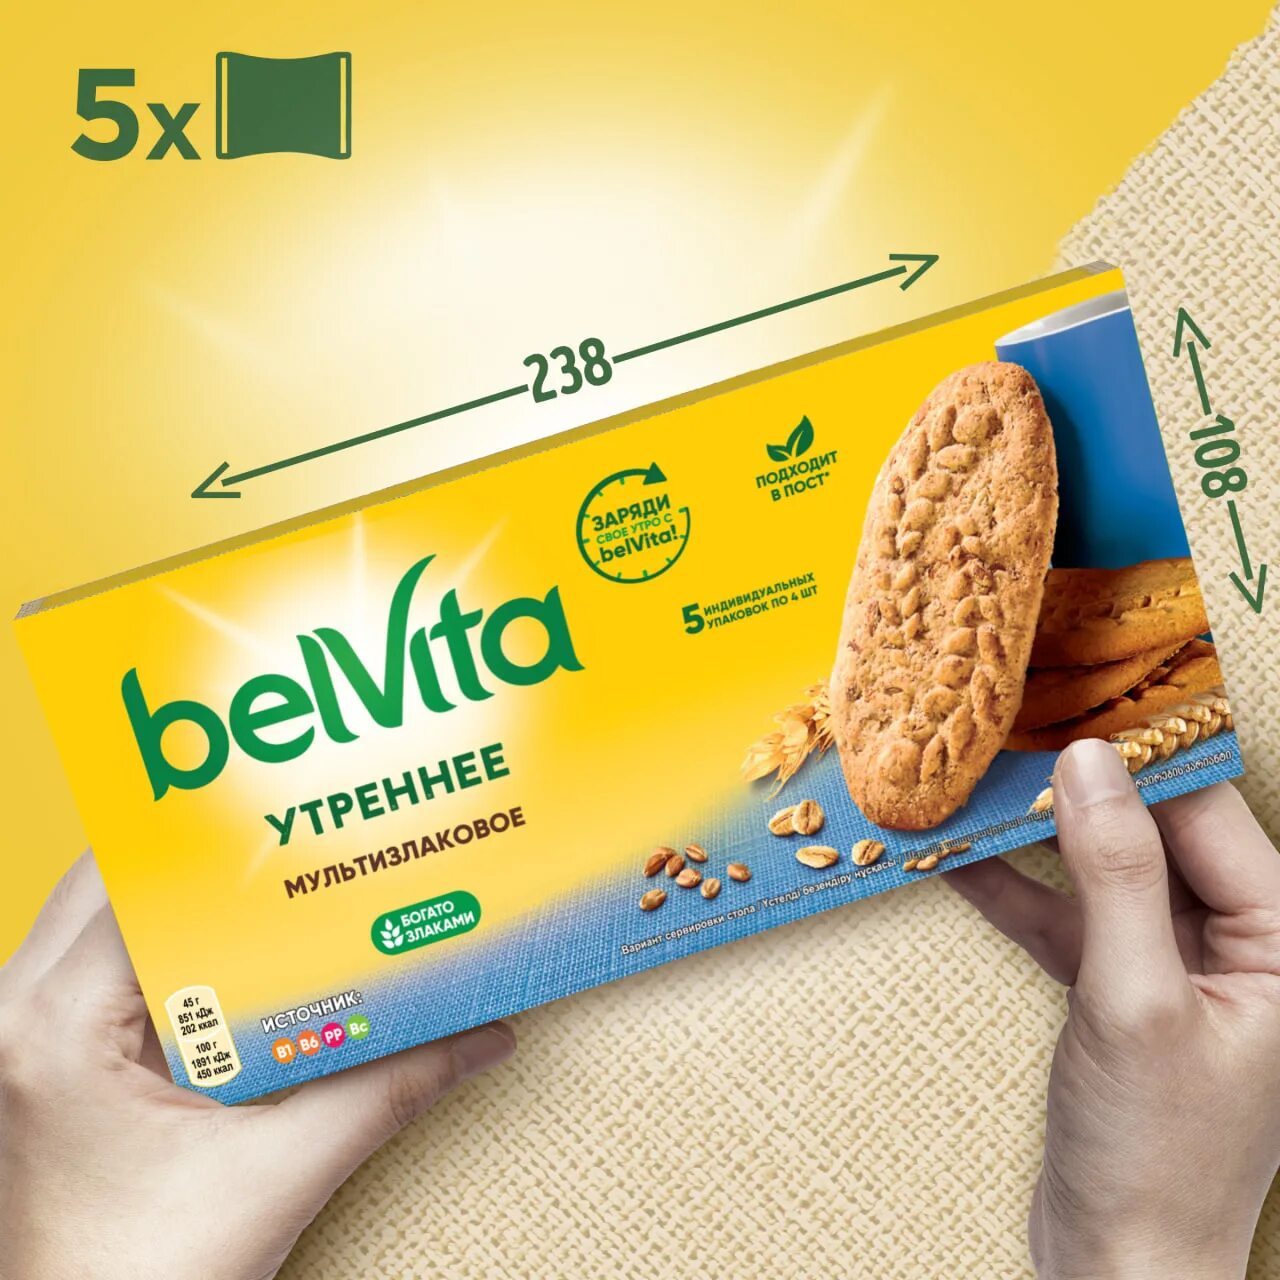 Печенье Belvita мультизлаковое 225г. Печенье утреннее Belvita витаминизированное, 225г. Печенье Belvita утреннее мультизлаковое, 225 г. Belvita утреннее мультизлаковое.